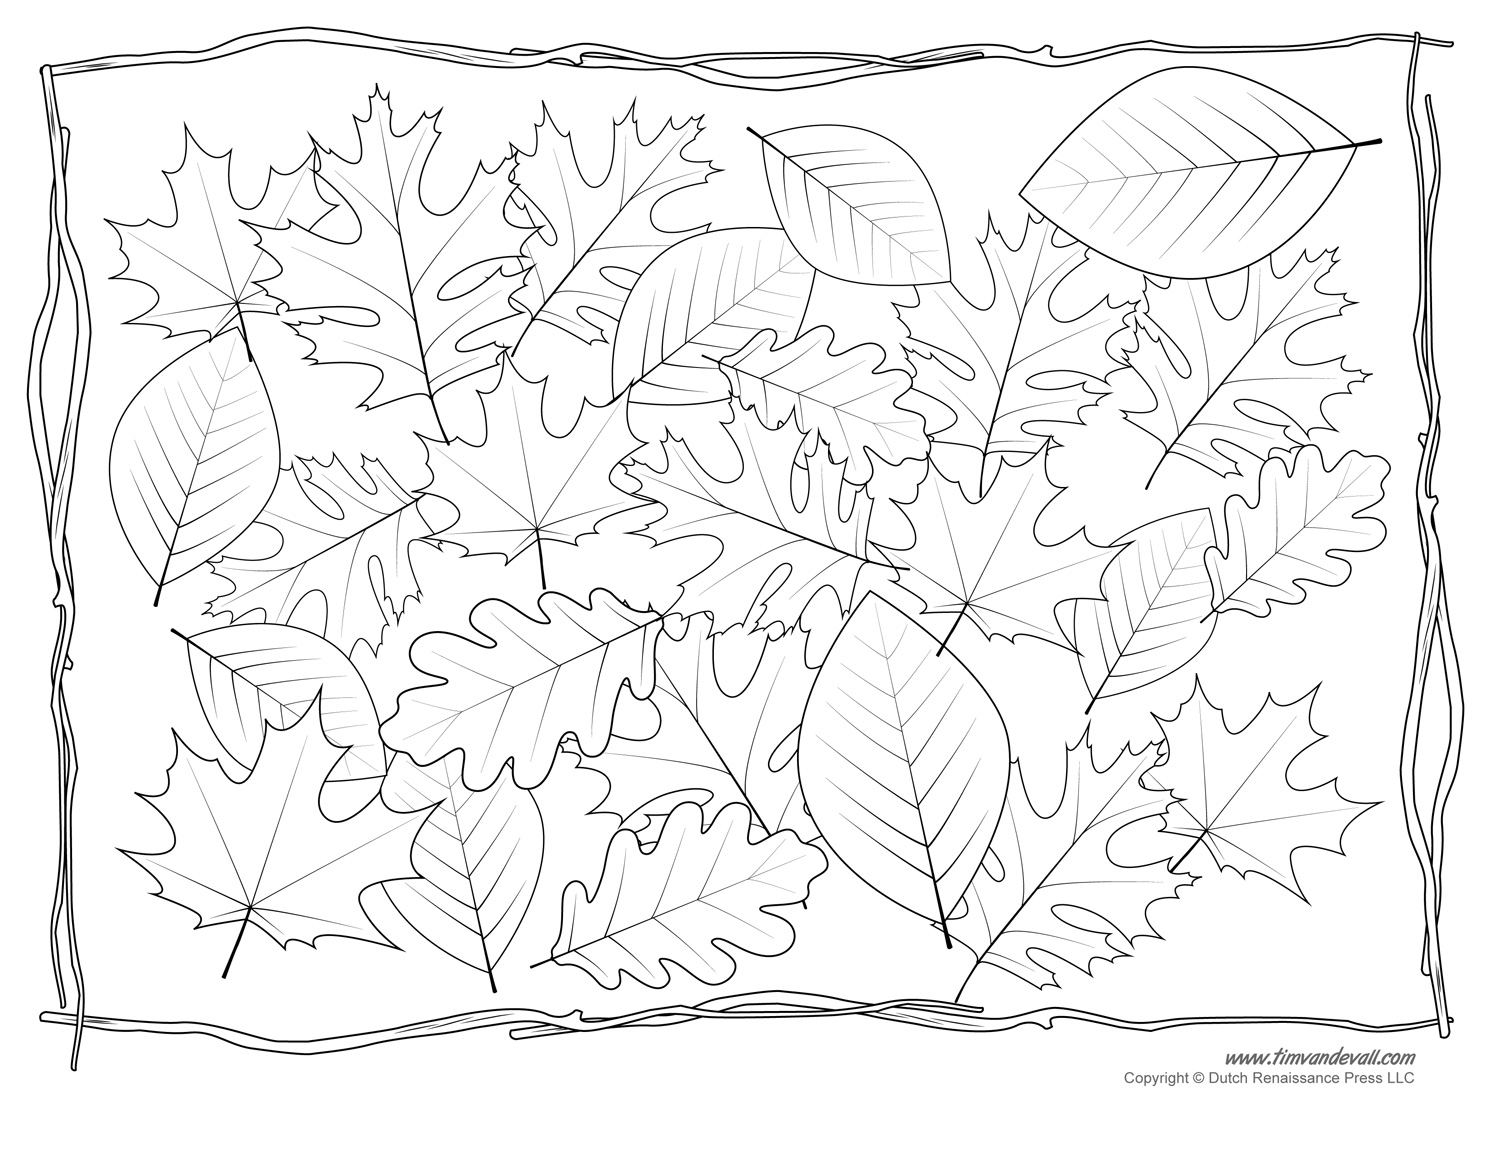 Leaf templates leaf coloring pages for kids leaf printables â tims printables